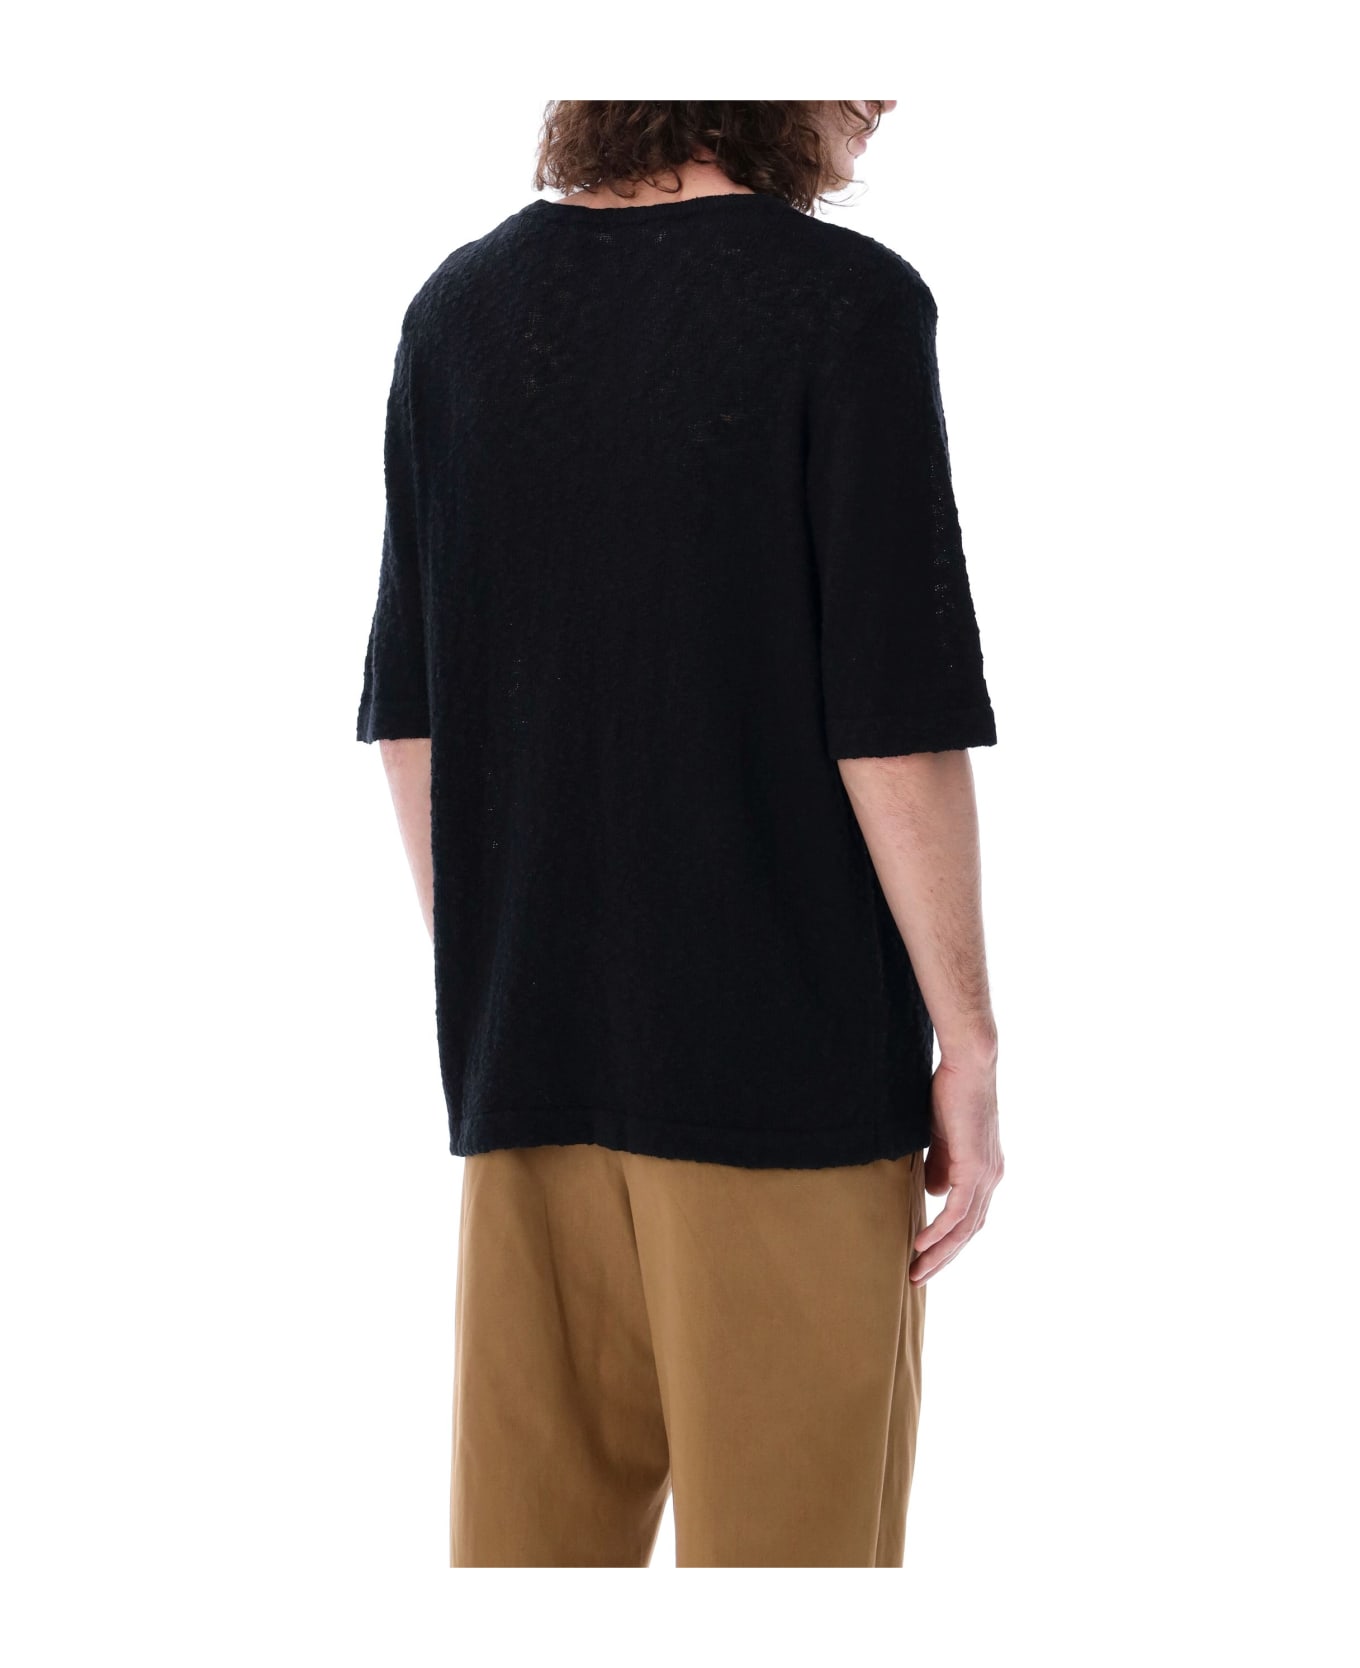 Séfr Tolomo T-shirt - BLACK SLUBBY COTTON シャツ